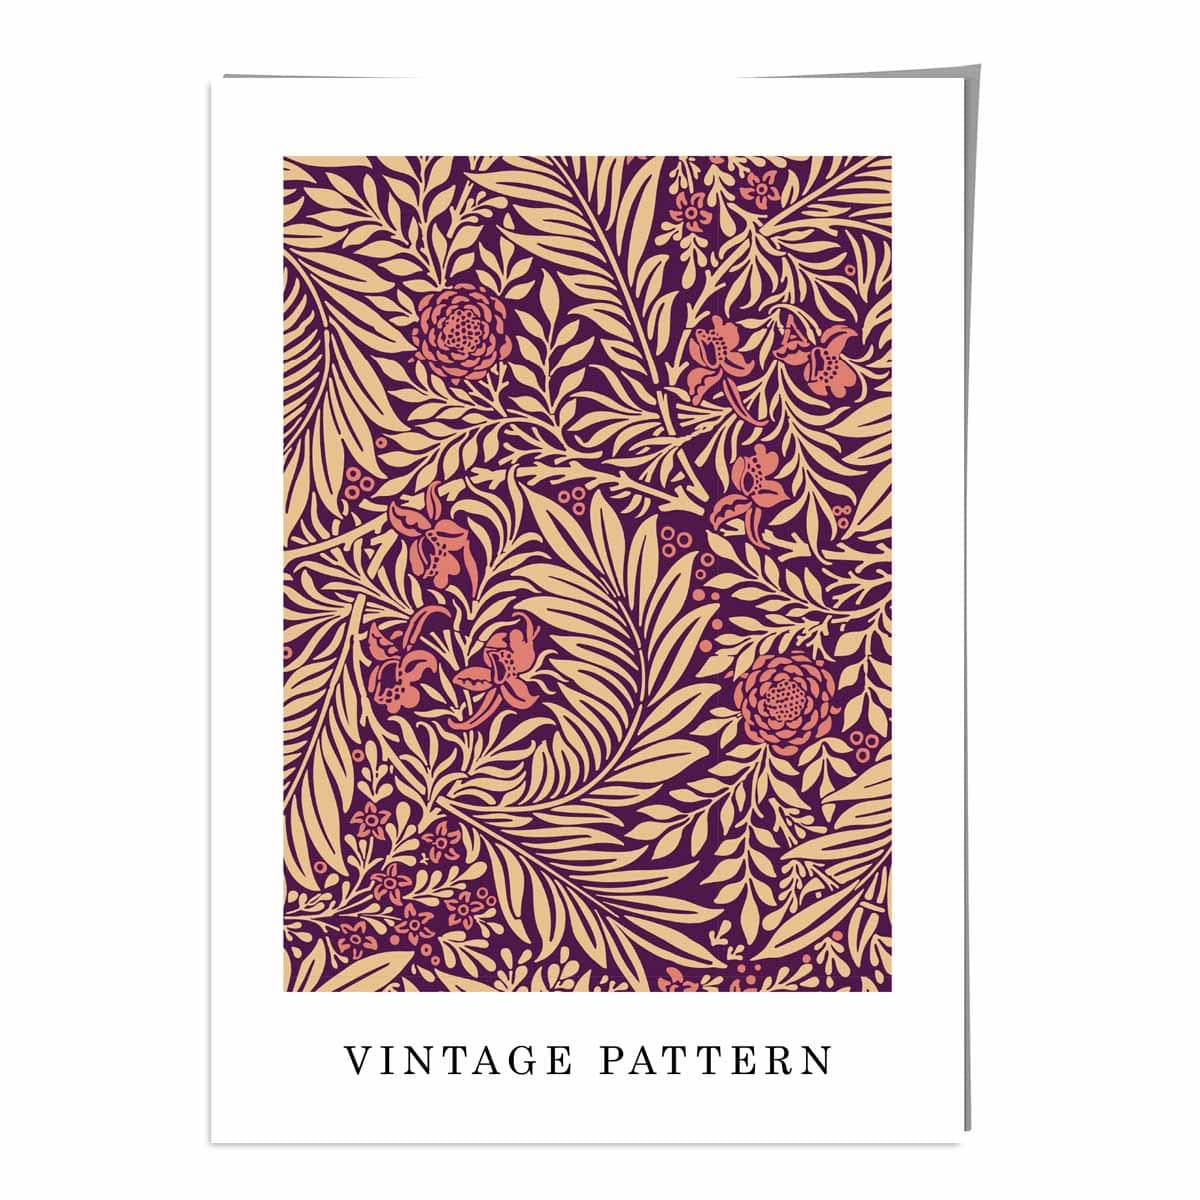 William Morris Red and Beige Vintage Larkspur Floral Art Print